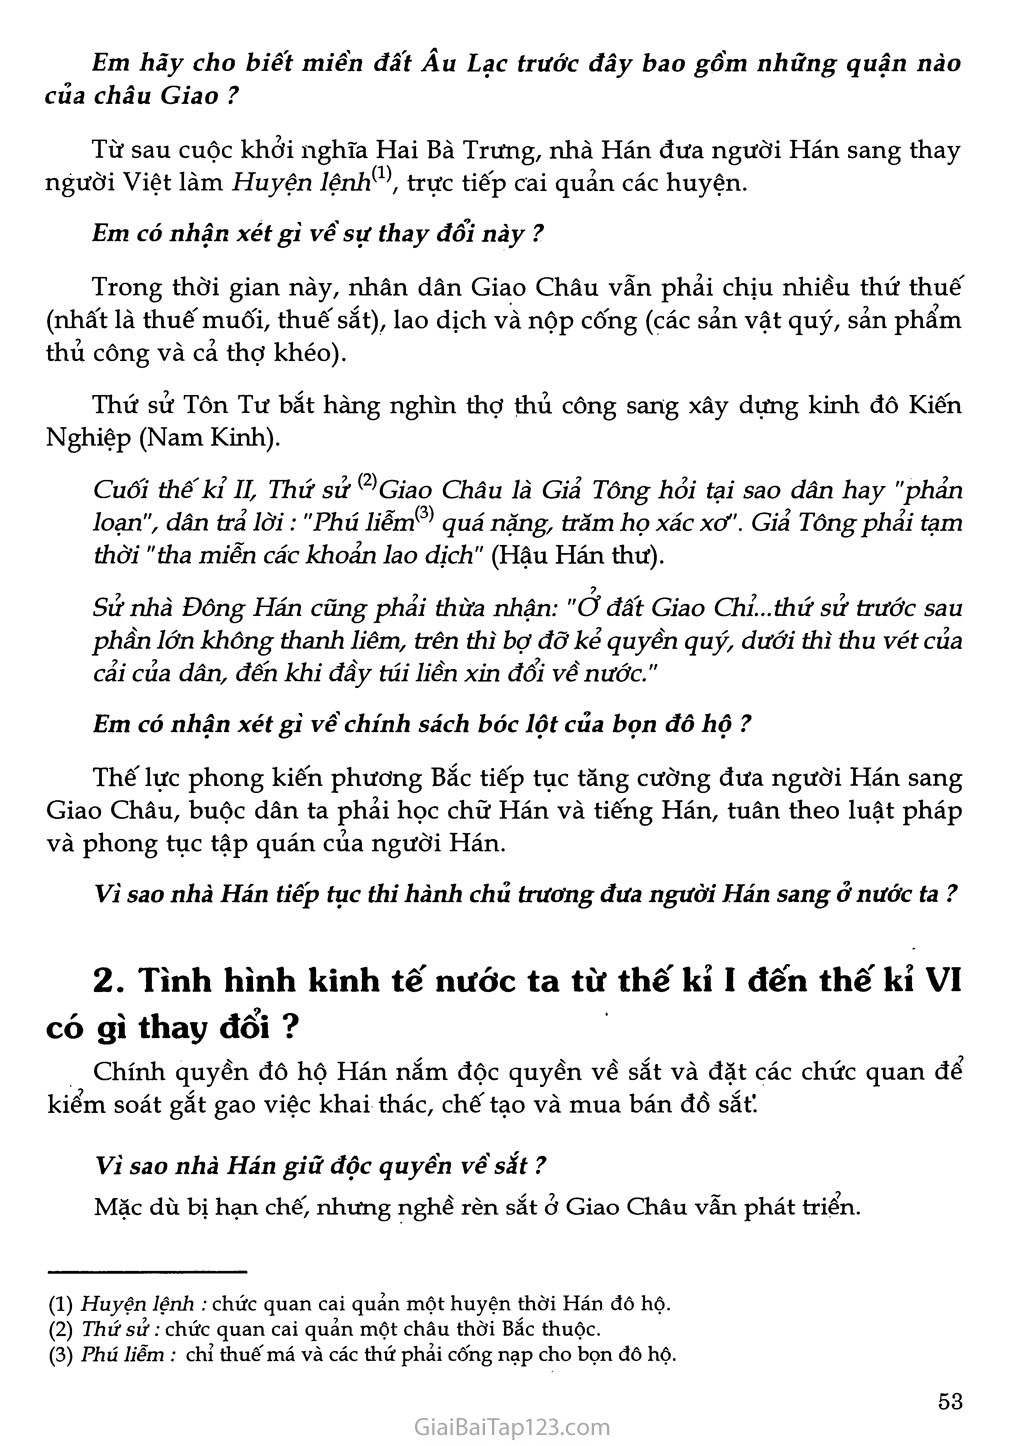 Bài 19 - Từ sau Trưng Vương đến trước Lý Nam Đế (Giữa thế kỉ I - Giữa thế kỉ VI) (1 tiết) trang 2